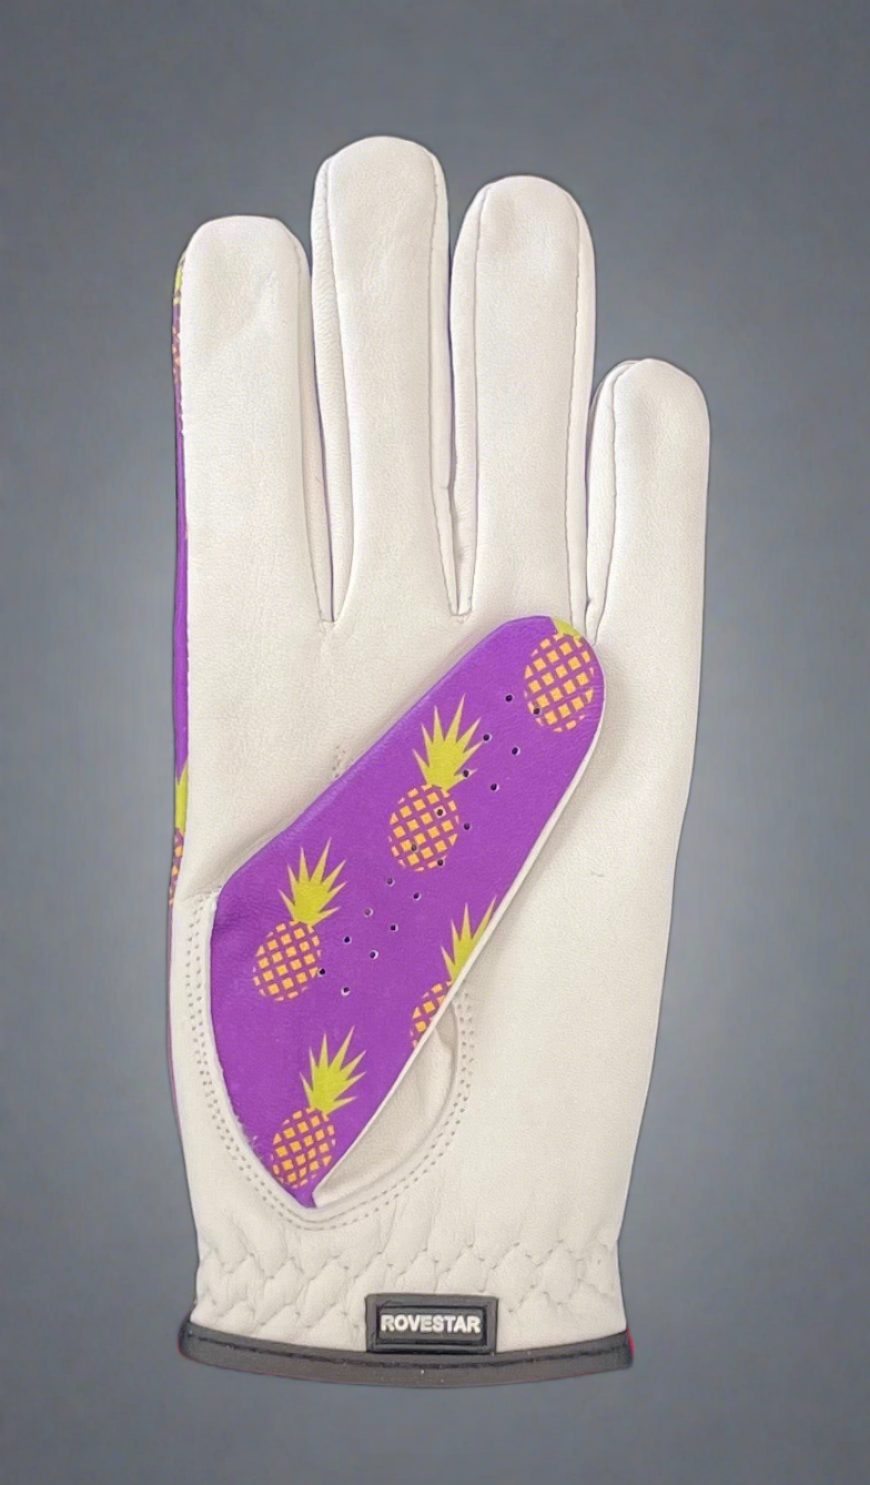 Ananas - Fun Stylish Golf Glove for Women